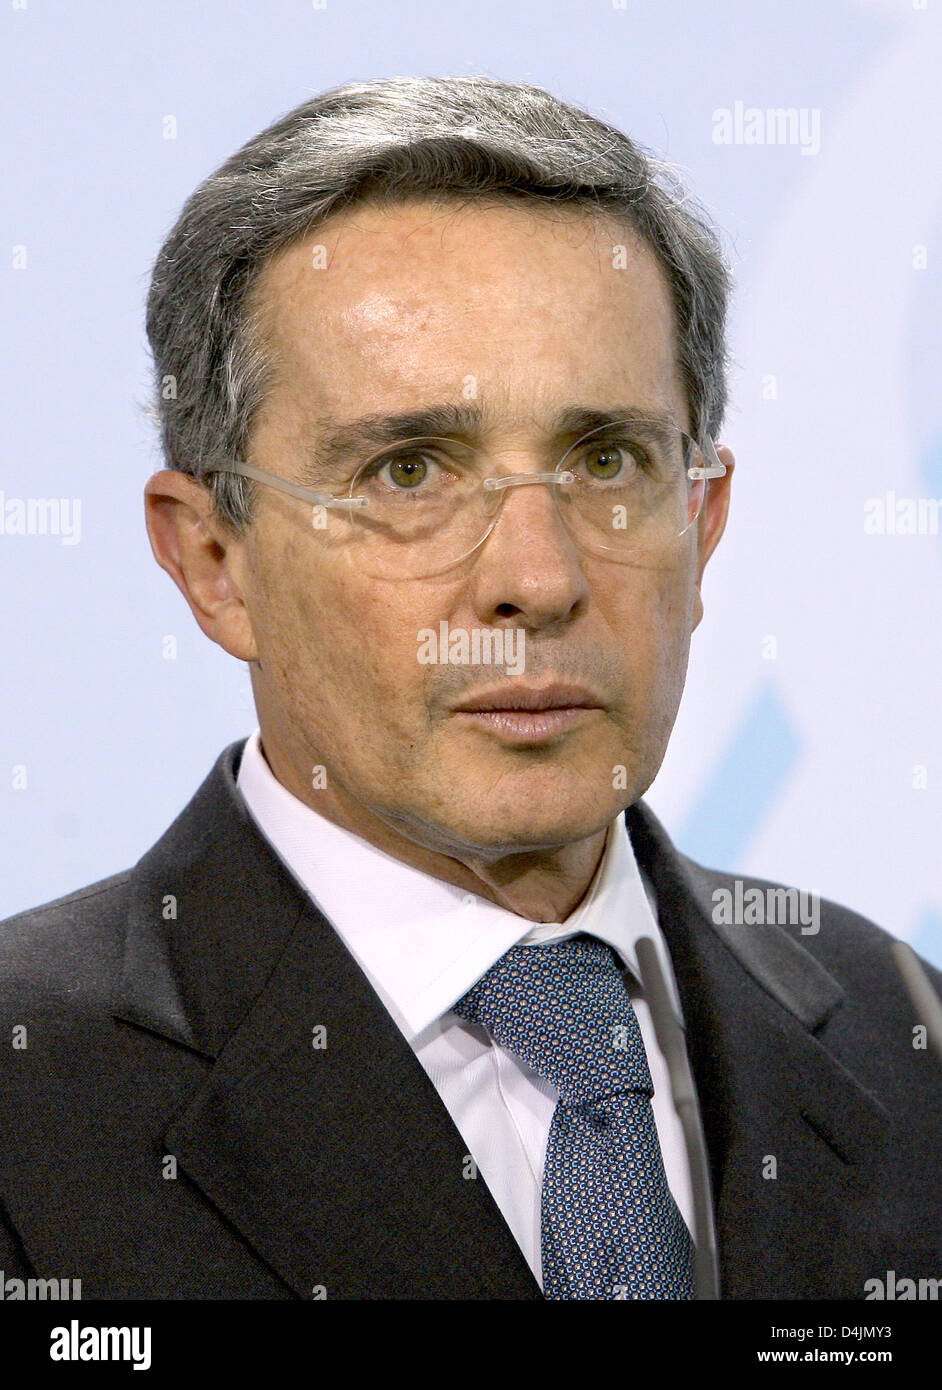 La photo montre Alvaro Uribe Velez, Président de la Colombie, à la chancellerie à Berlin, Allemagne, 31 janvier 2009. Photo : Stephanie Pilick Banque D'Images